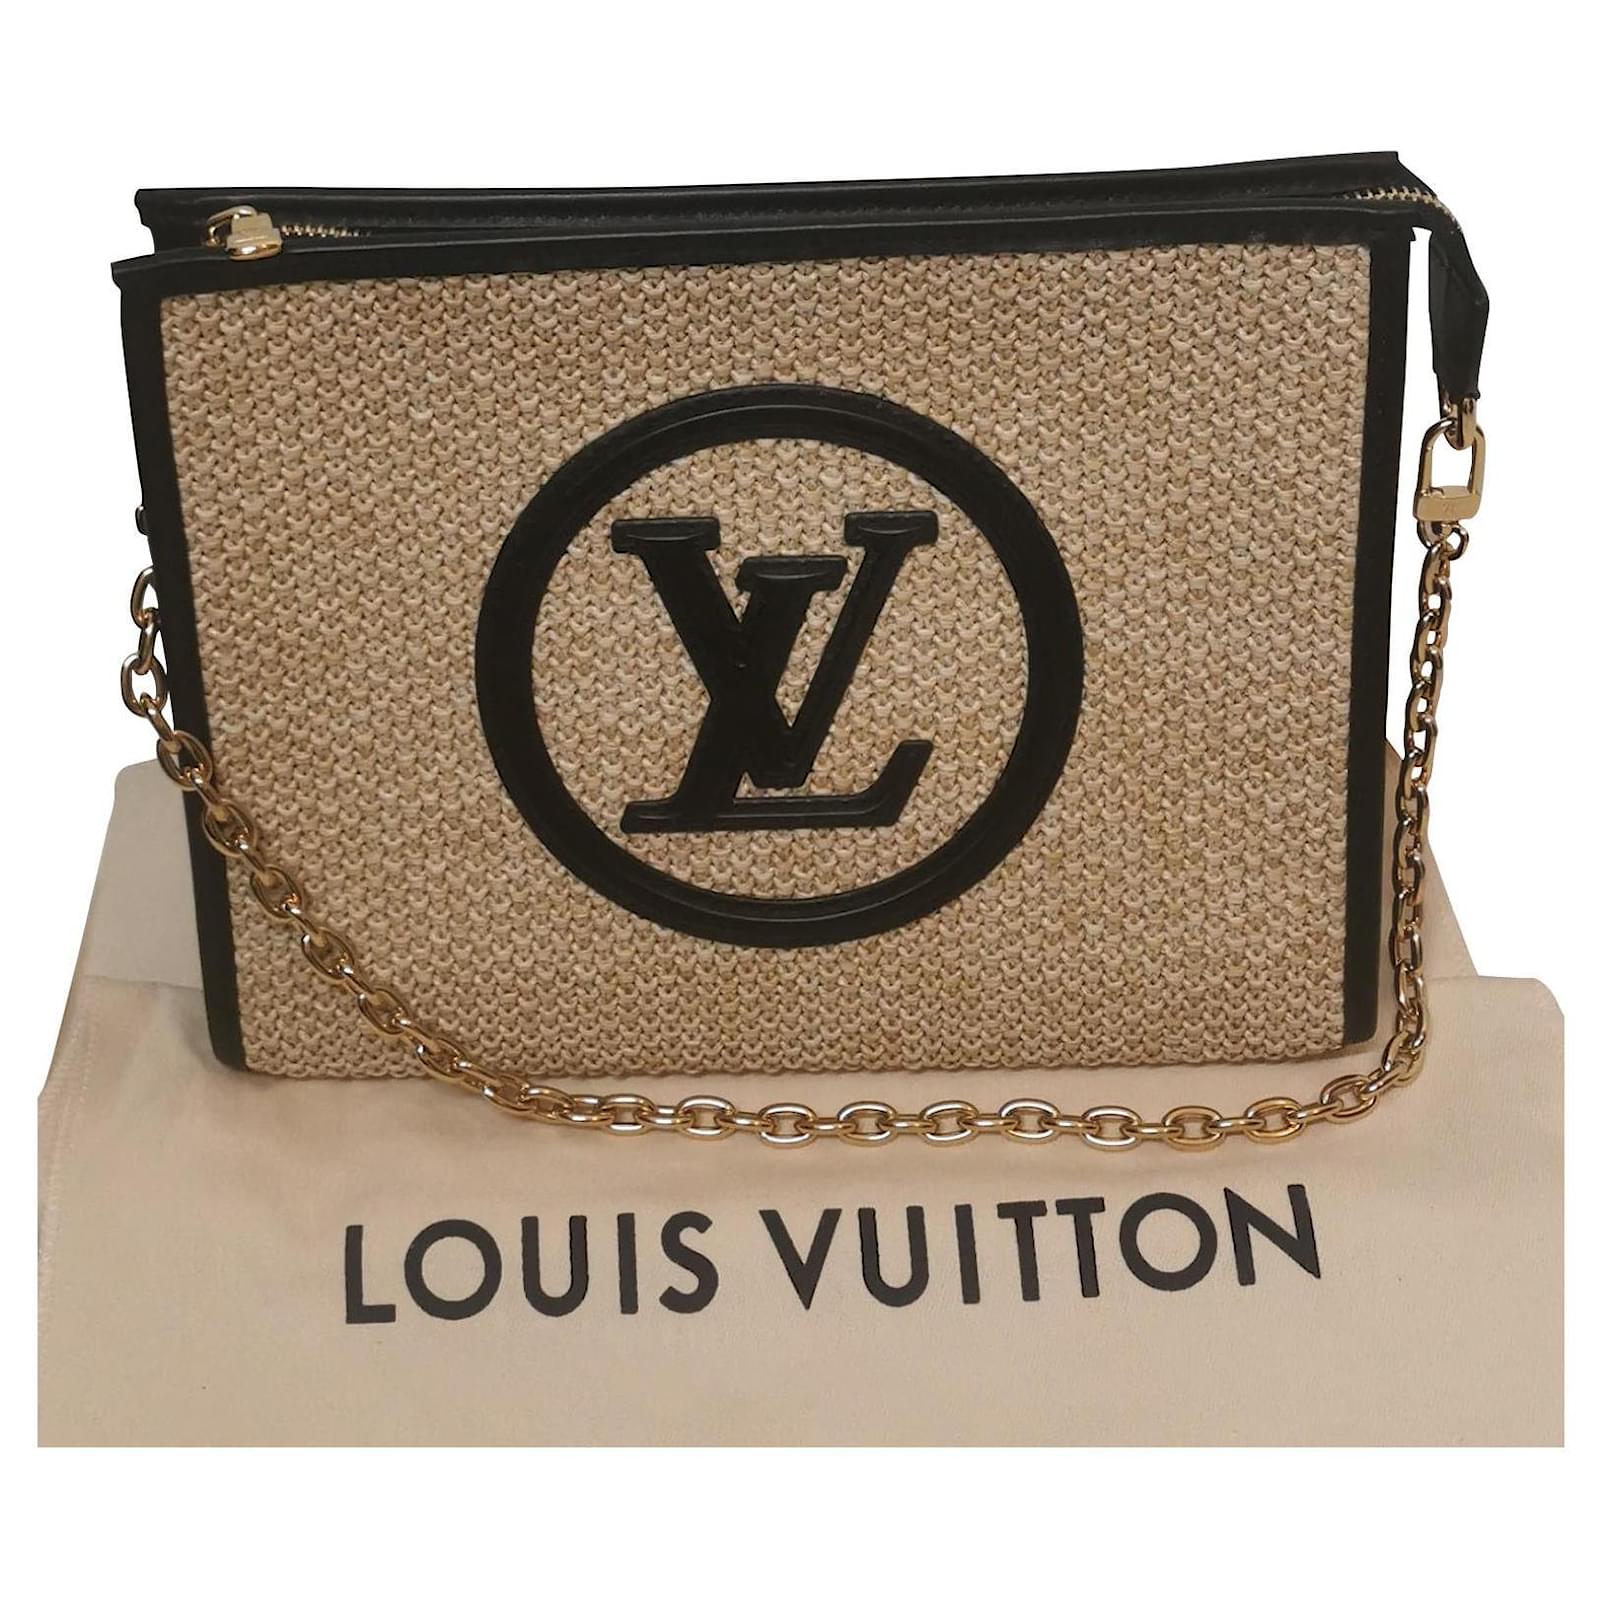 Es imposible no querer que este bolso de Louis Vuitton sea nuestro regalo  de Navidad